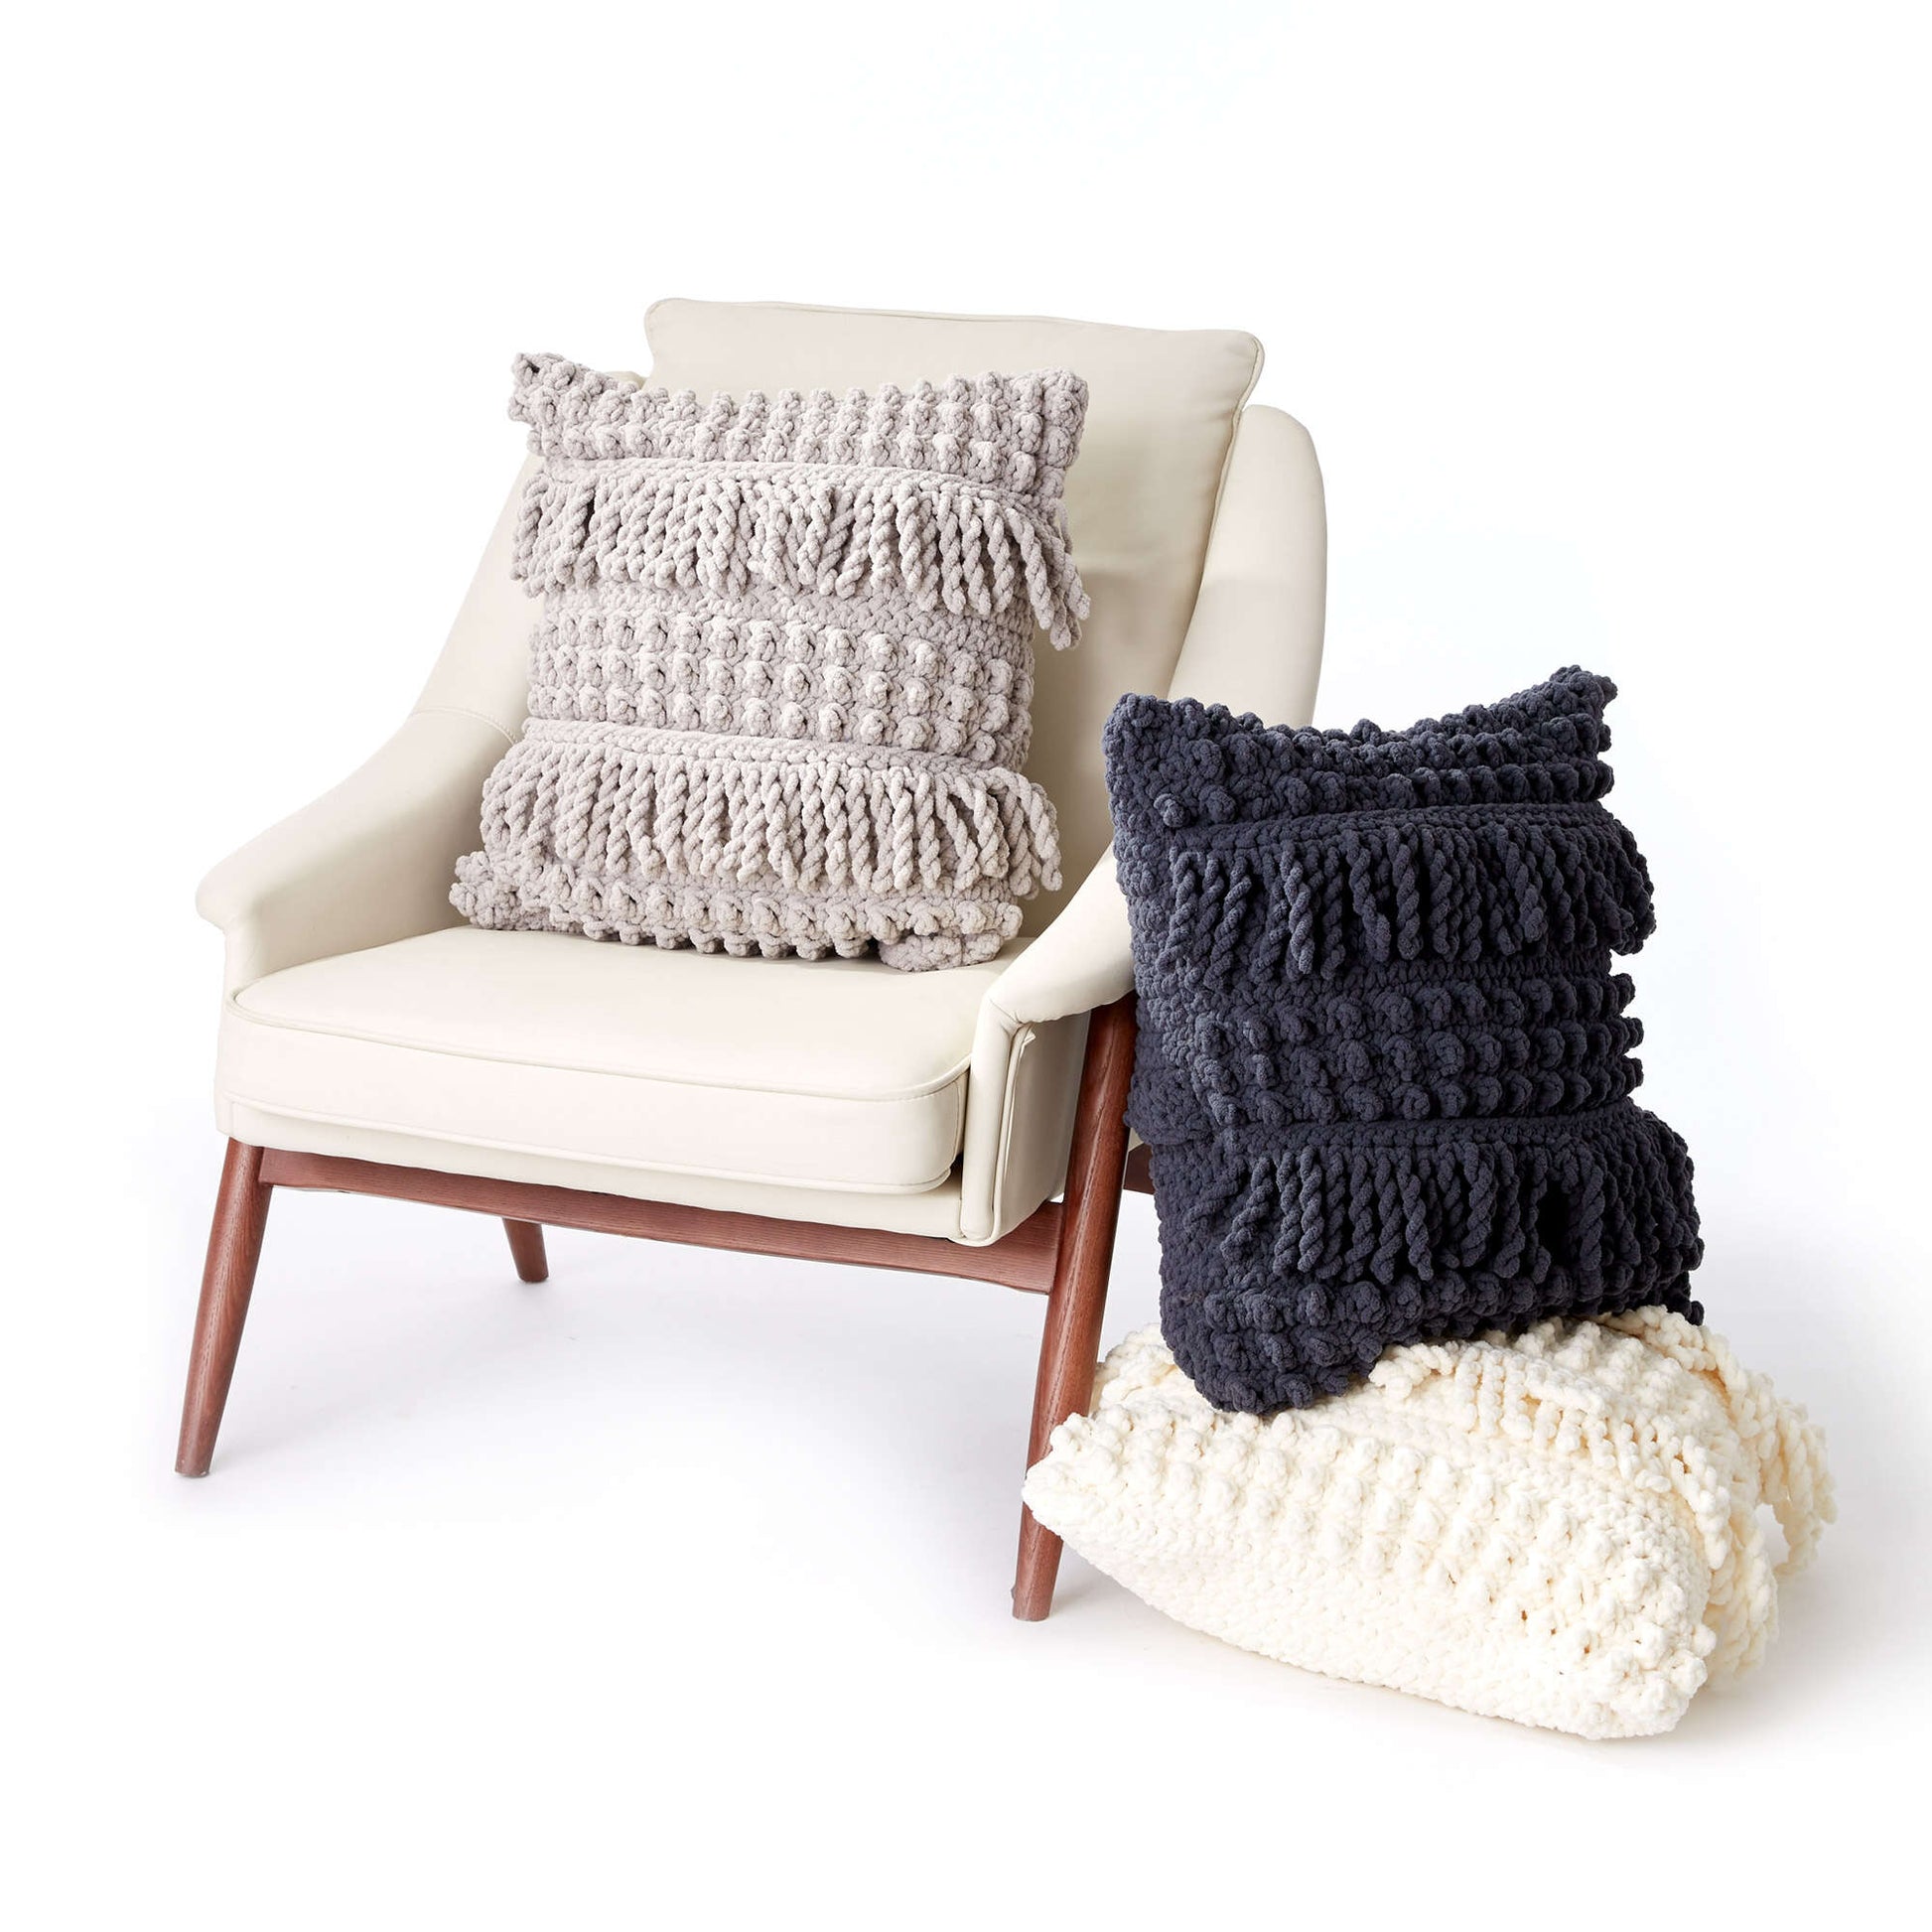 Free Bernat Bobble And Fringe Crochet Pillow Pattern